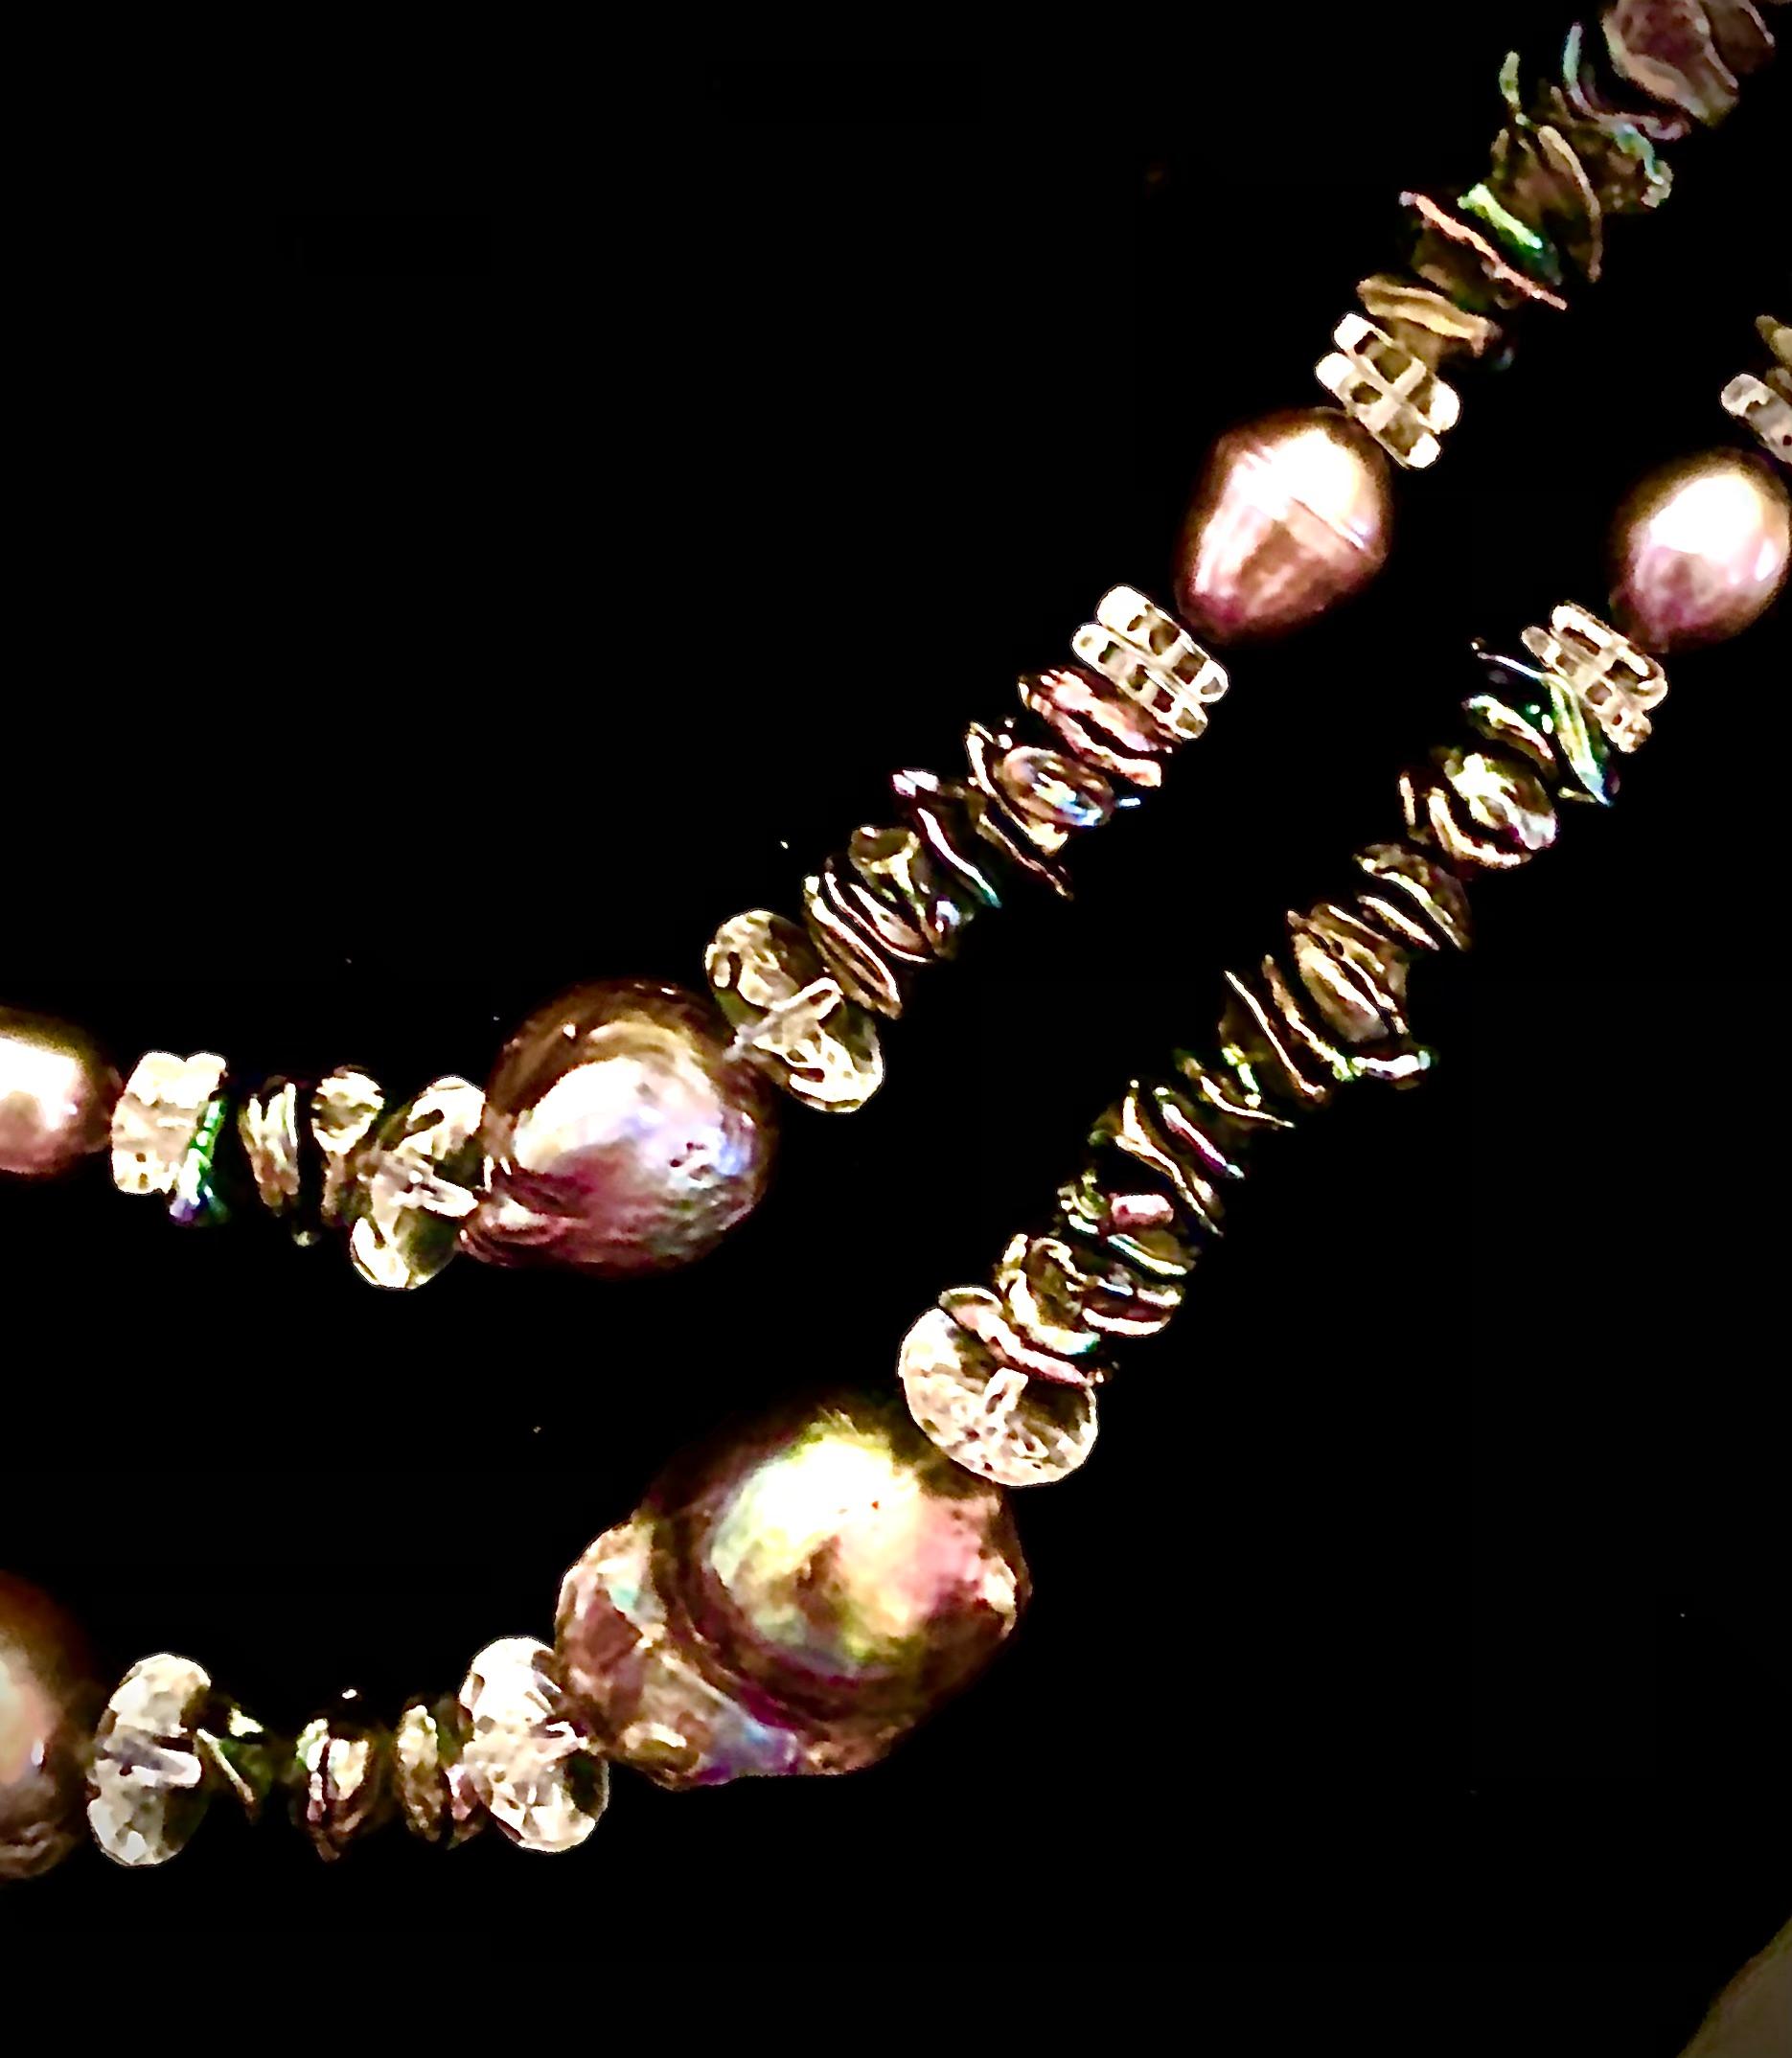 Wunderschöne und einzigartige doppelte Halskette. Längeres Stück aus Pfauenbarockperlen mit einer Größe von ca. 22 mm bis über 25 mm. Diese Perlen haben intensive grüne, lila und violette Obertöne. Die großen Perlen werden von facettierten